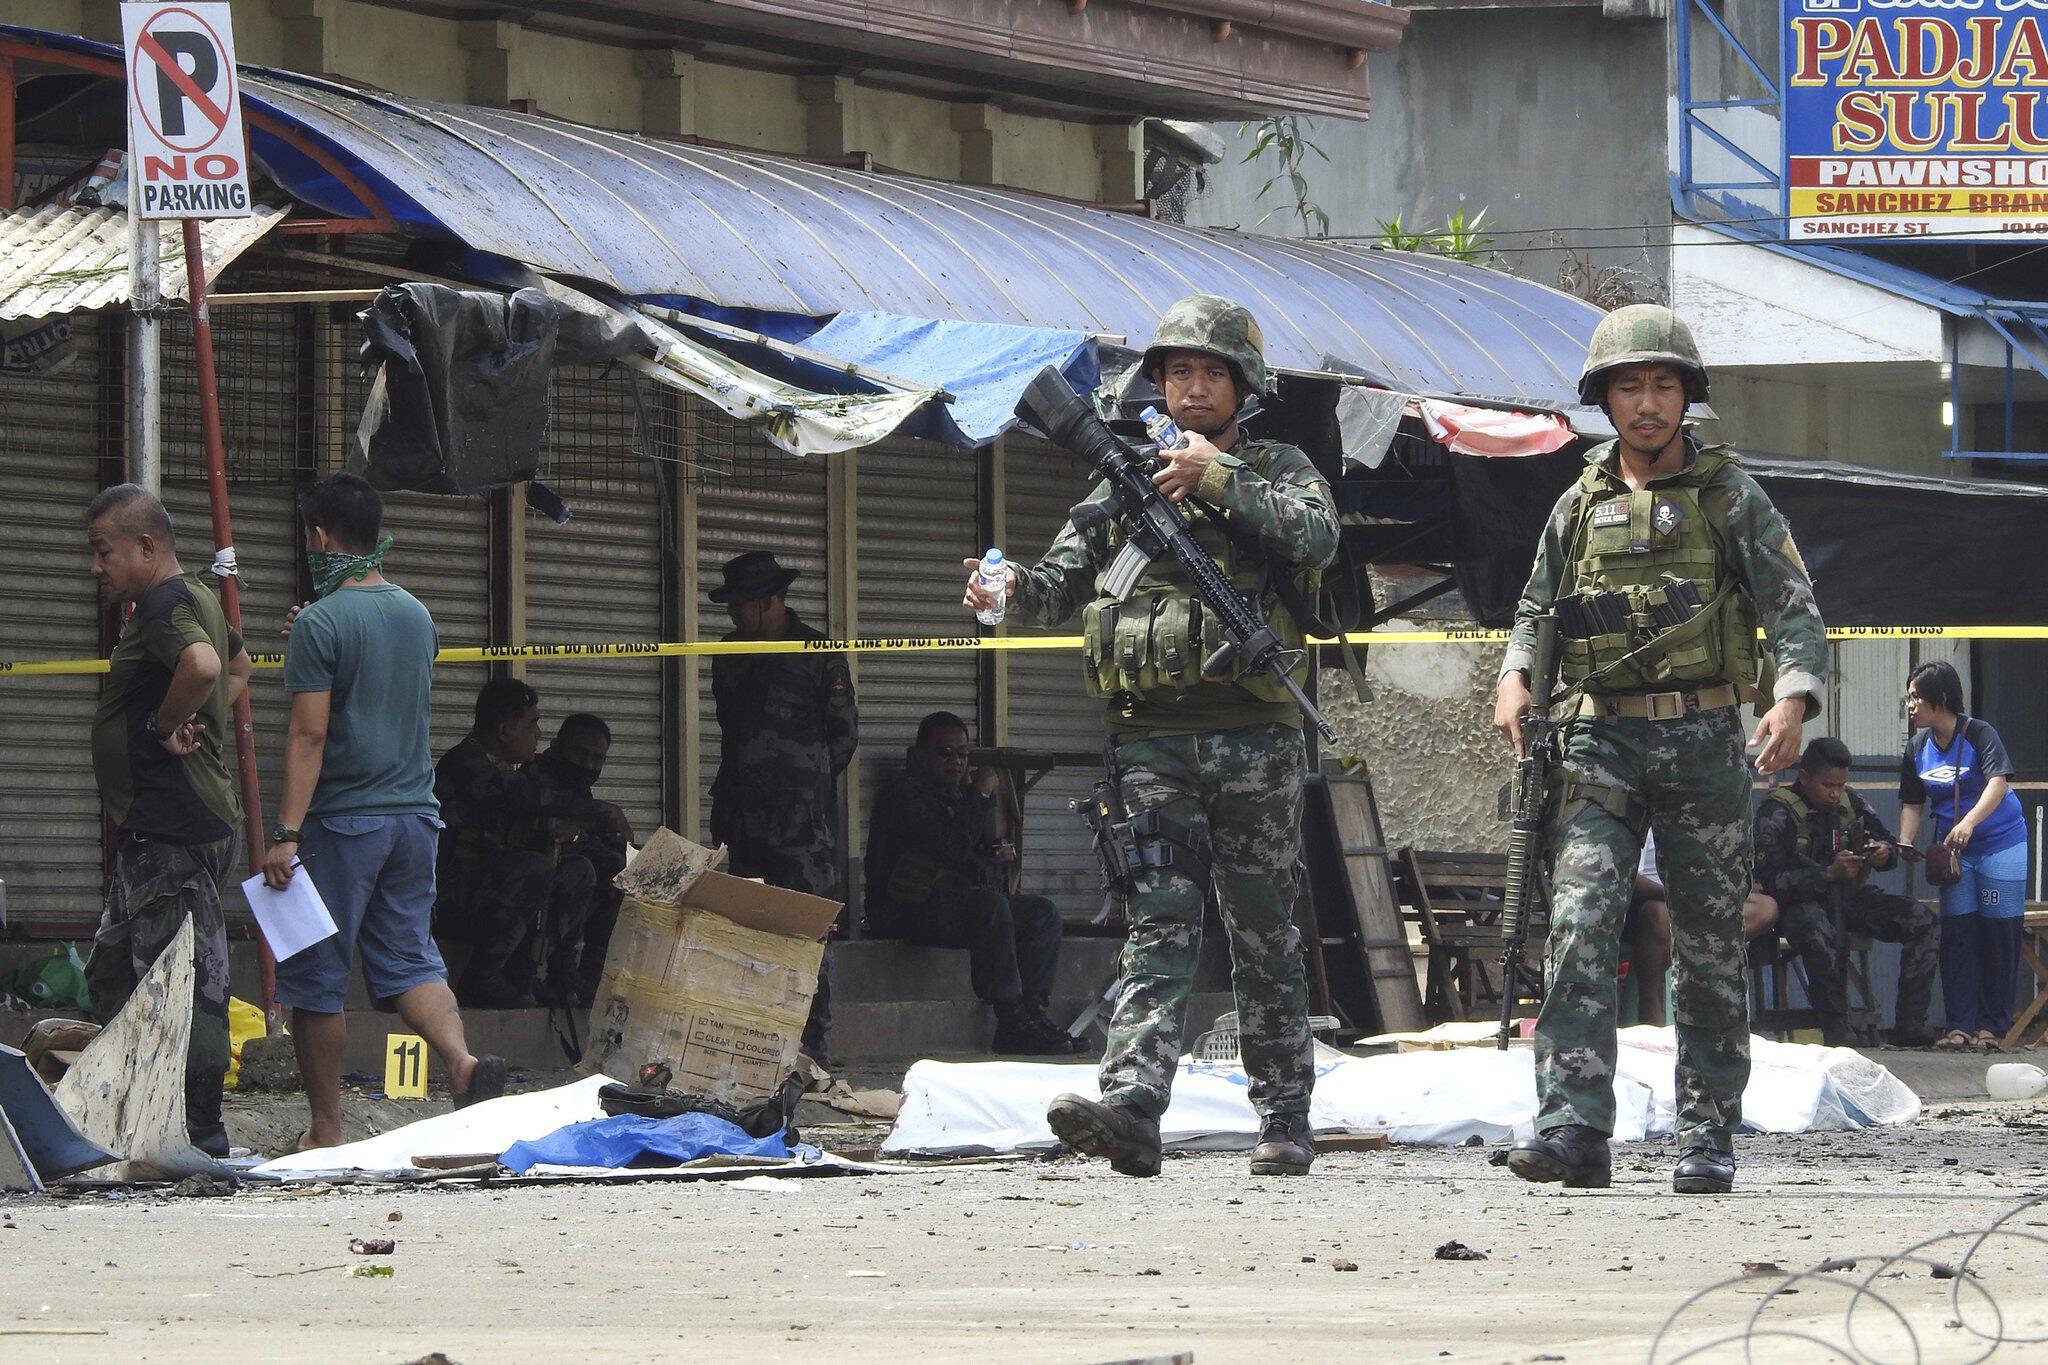 Philippinische Armee riegelt Jolo nach Anschlag ab | GMX.CH